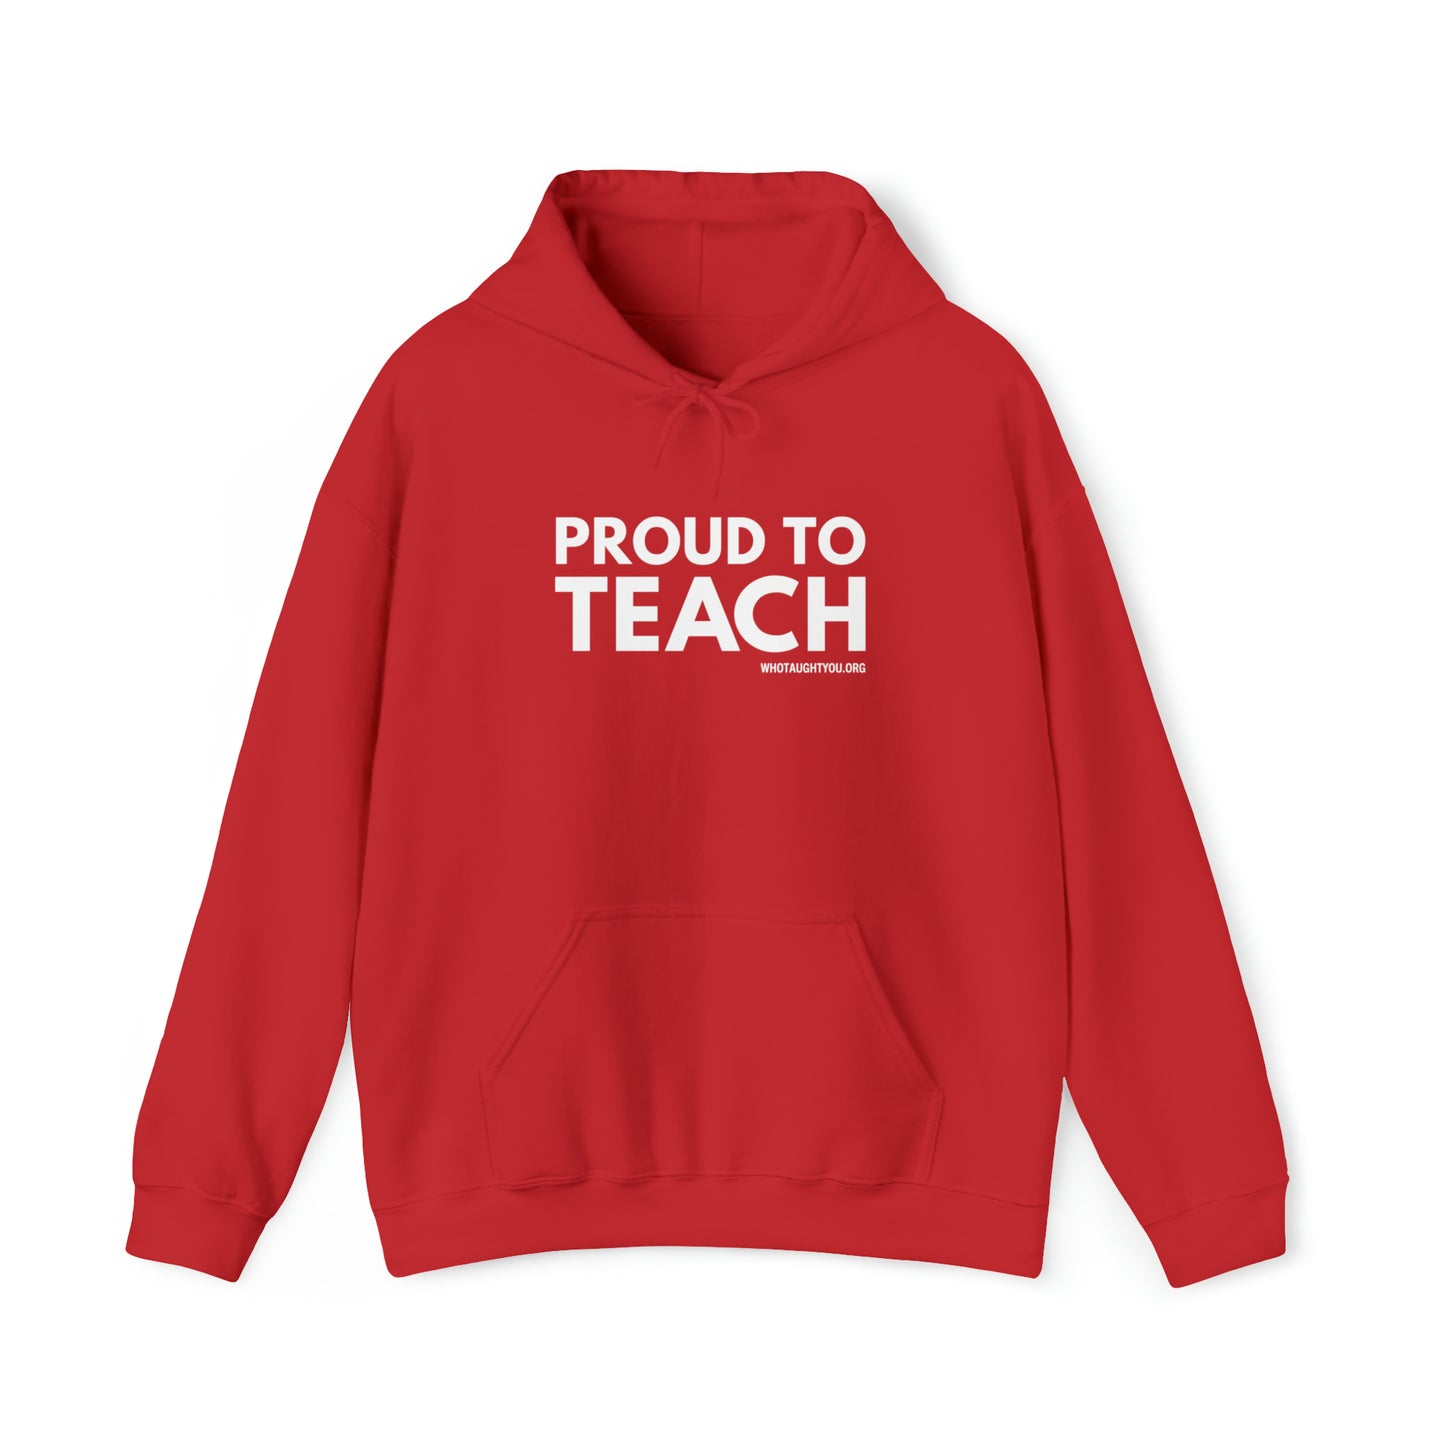 PROUD TO TEACH Hooded Sweatshirt